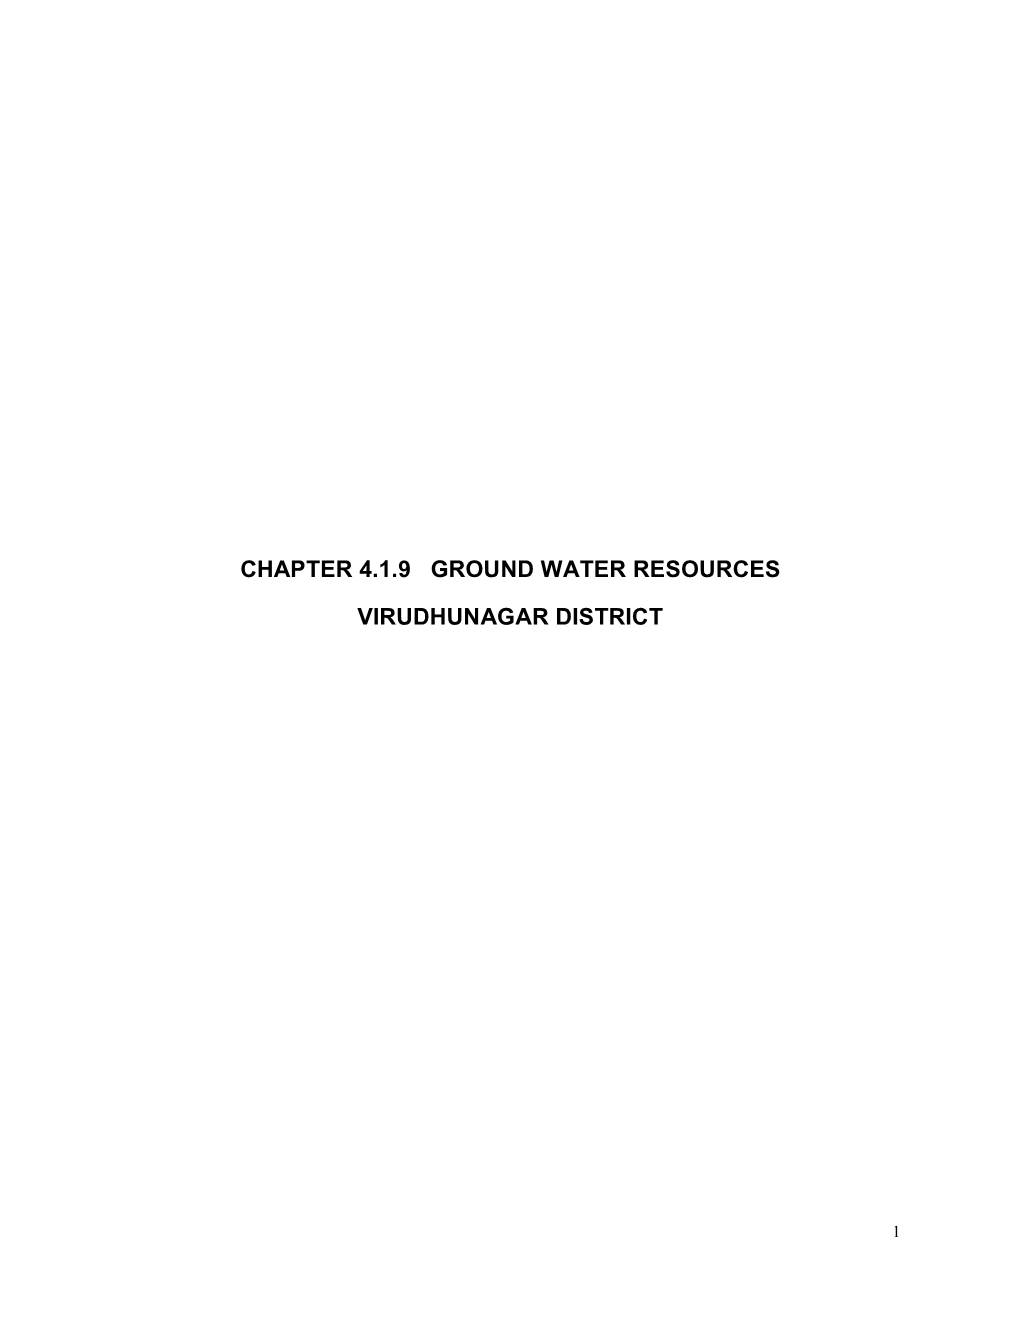 Chapter 4.1.9 Ground Water Resources Virudhunagar